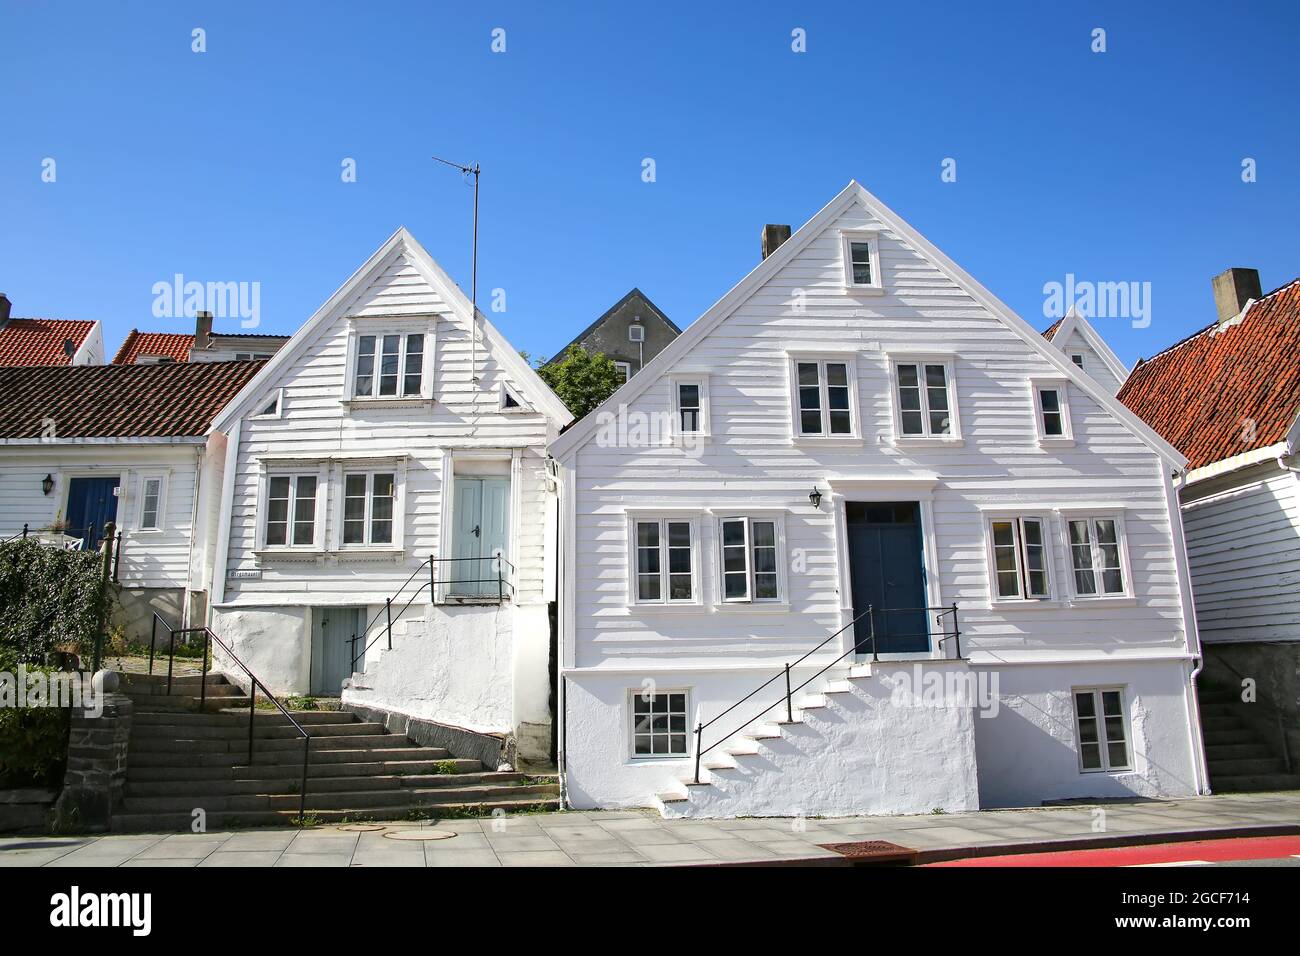 Traditionelle Holzhäuser, die alle weiß gestrichen sind mit roten Dächern. Das Hotel liegt in Gamle Stavanger, einem historischen Viertel der Stadt Stavanger, Norwegen. Stockfoto